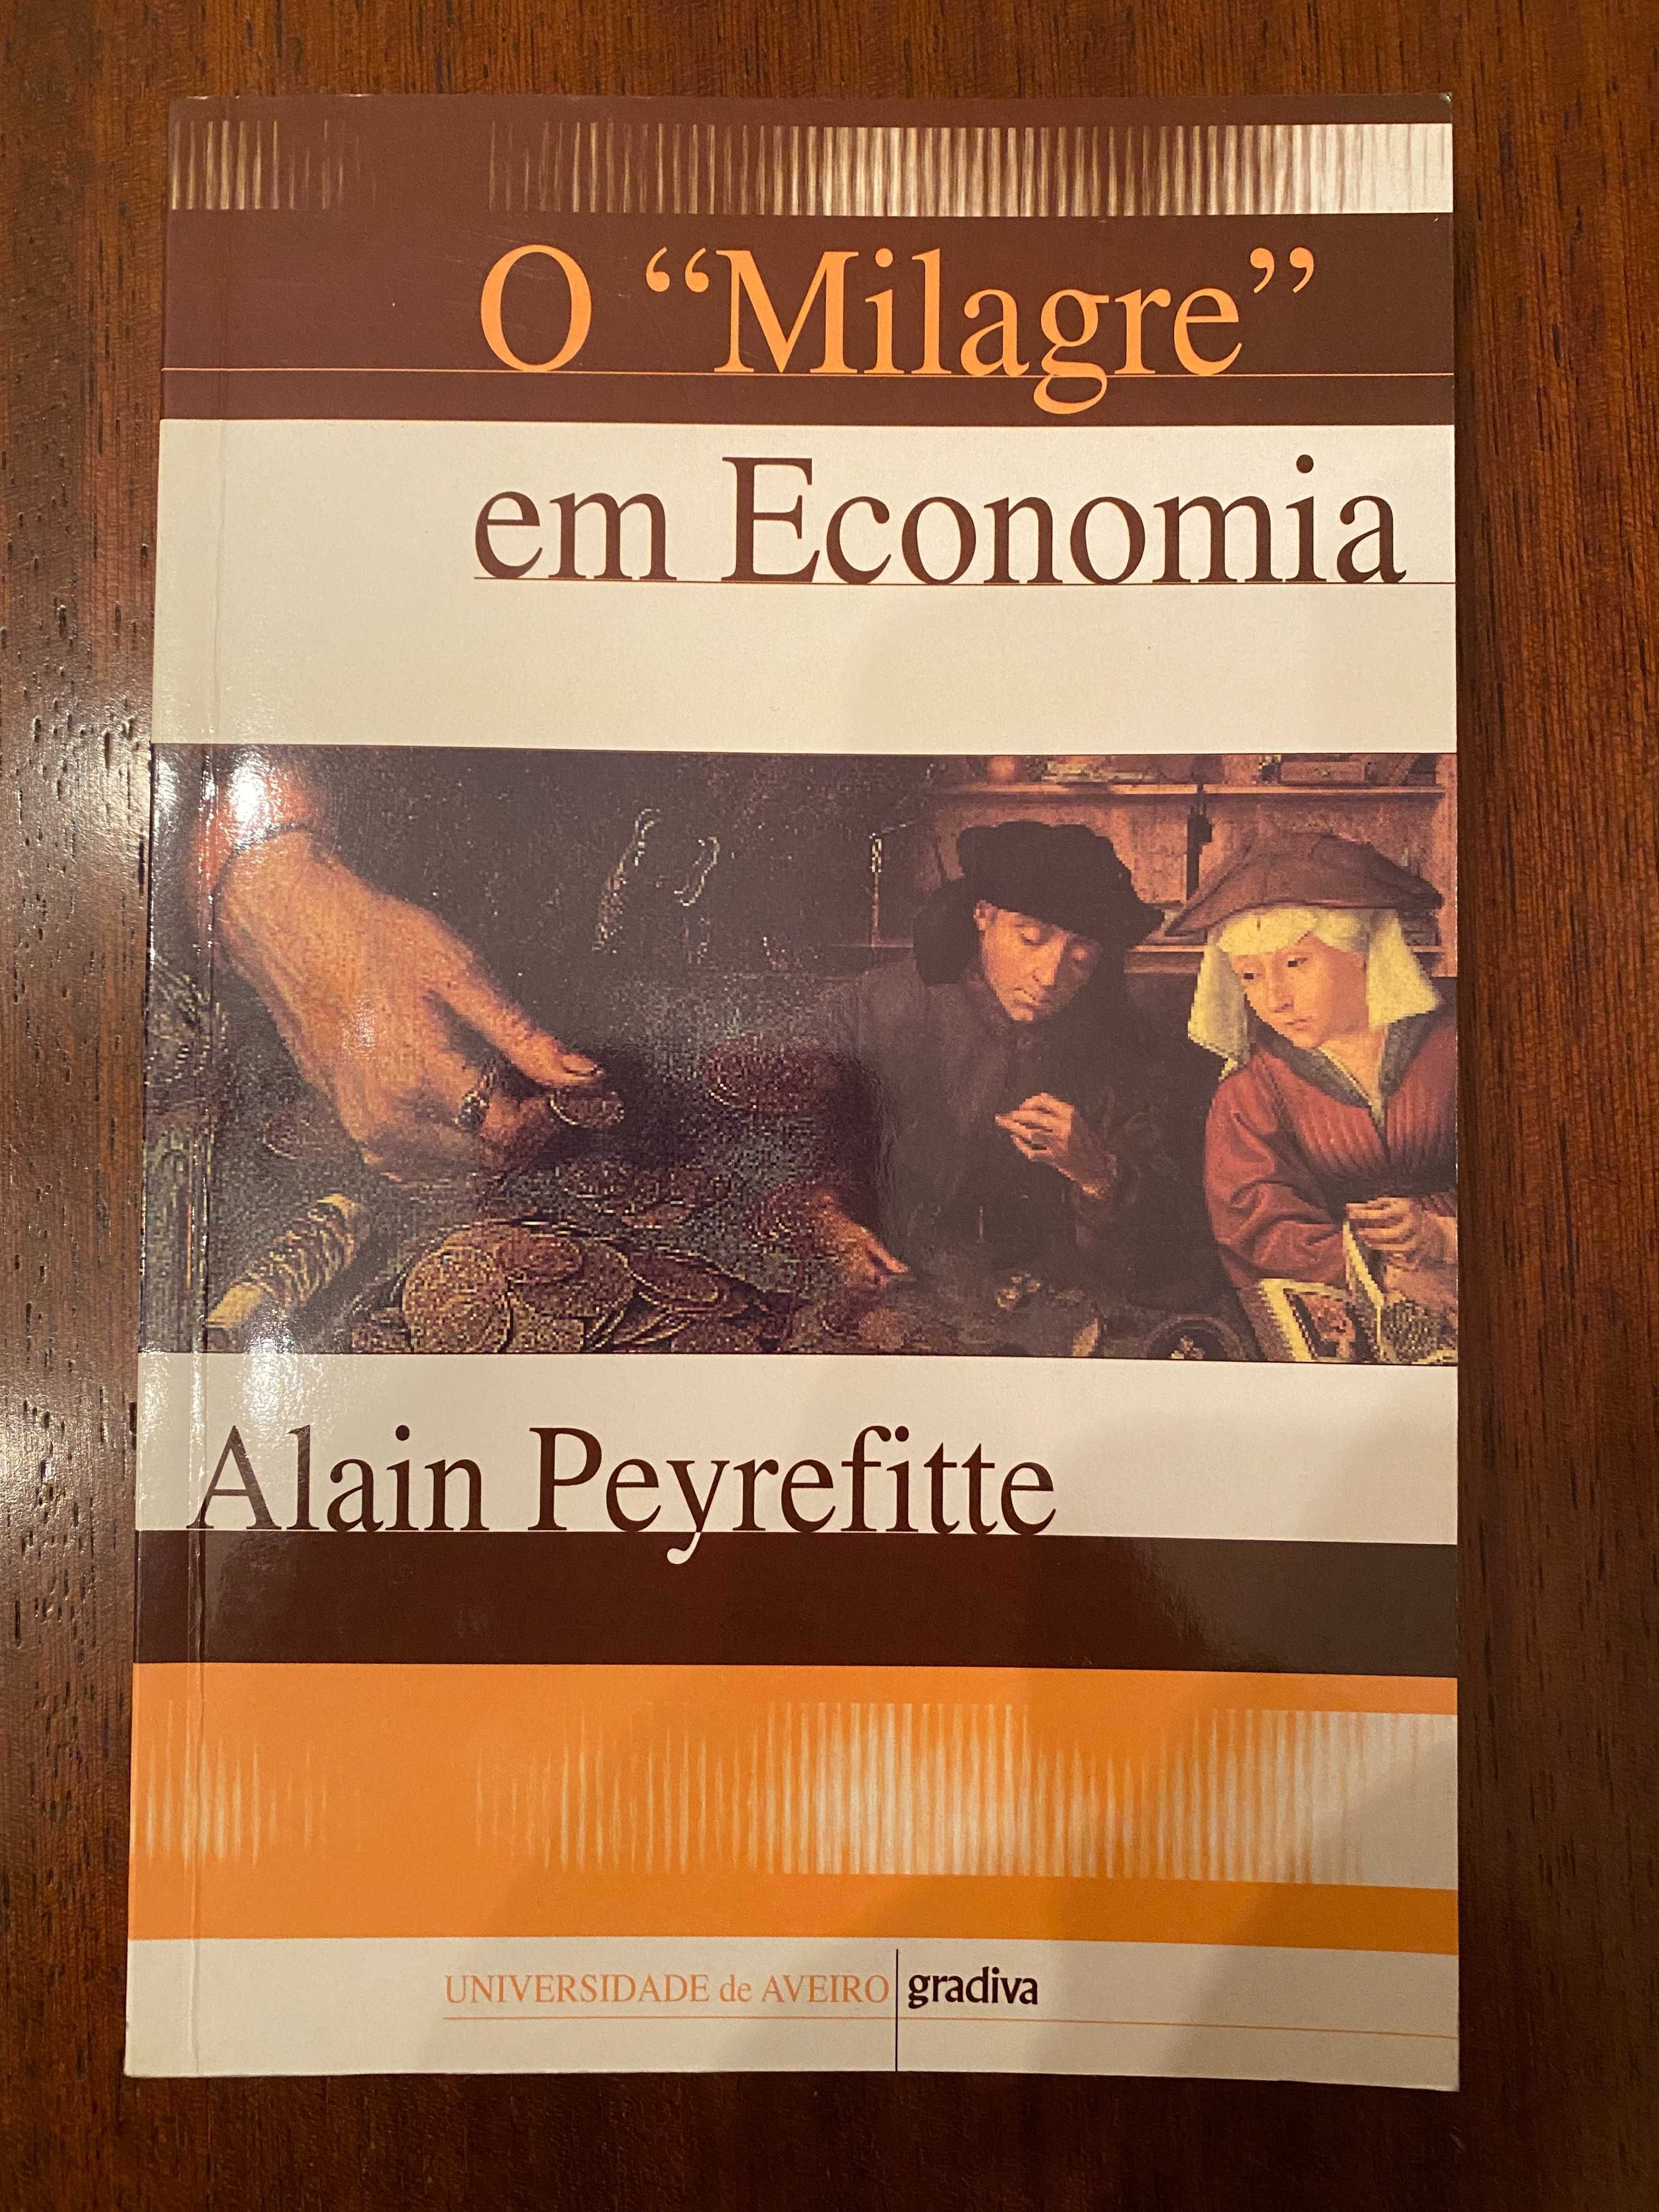 O Milagre em Economia, de Alain Peyrefitte